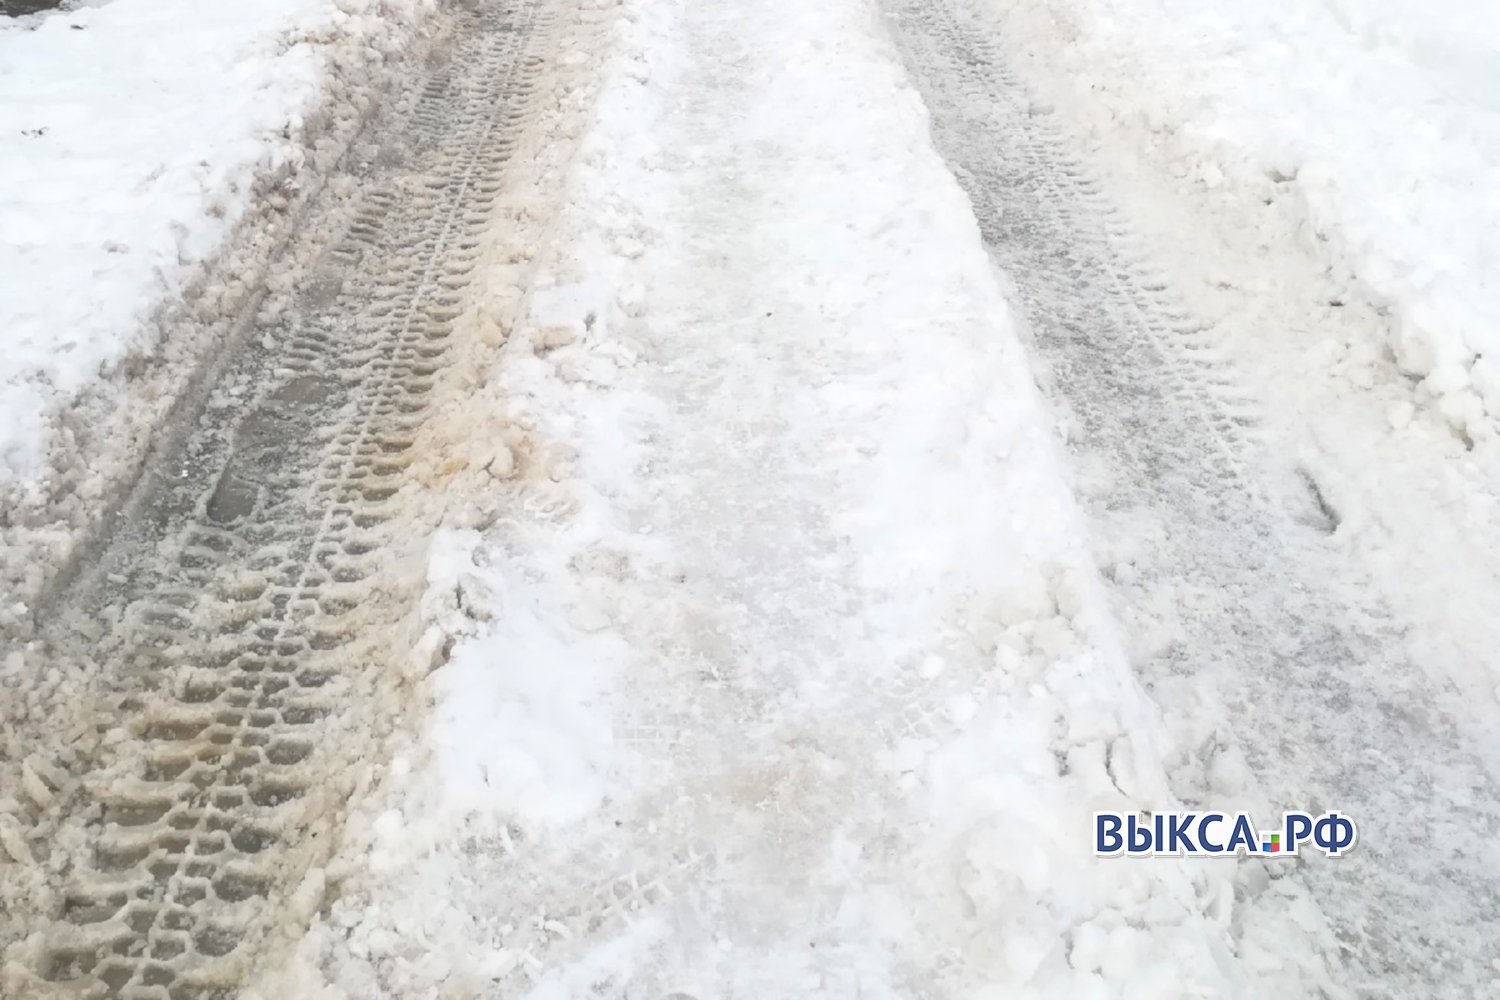 Прокуратура потребовала лучше чистить дороги в квартале Шухова